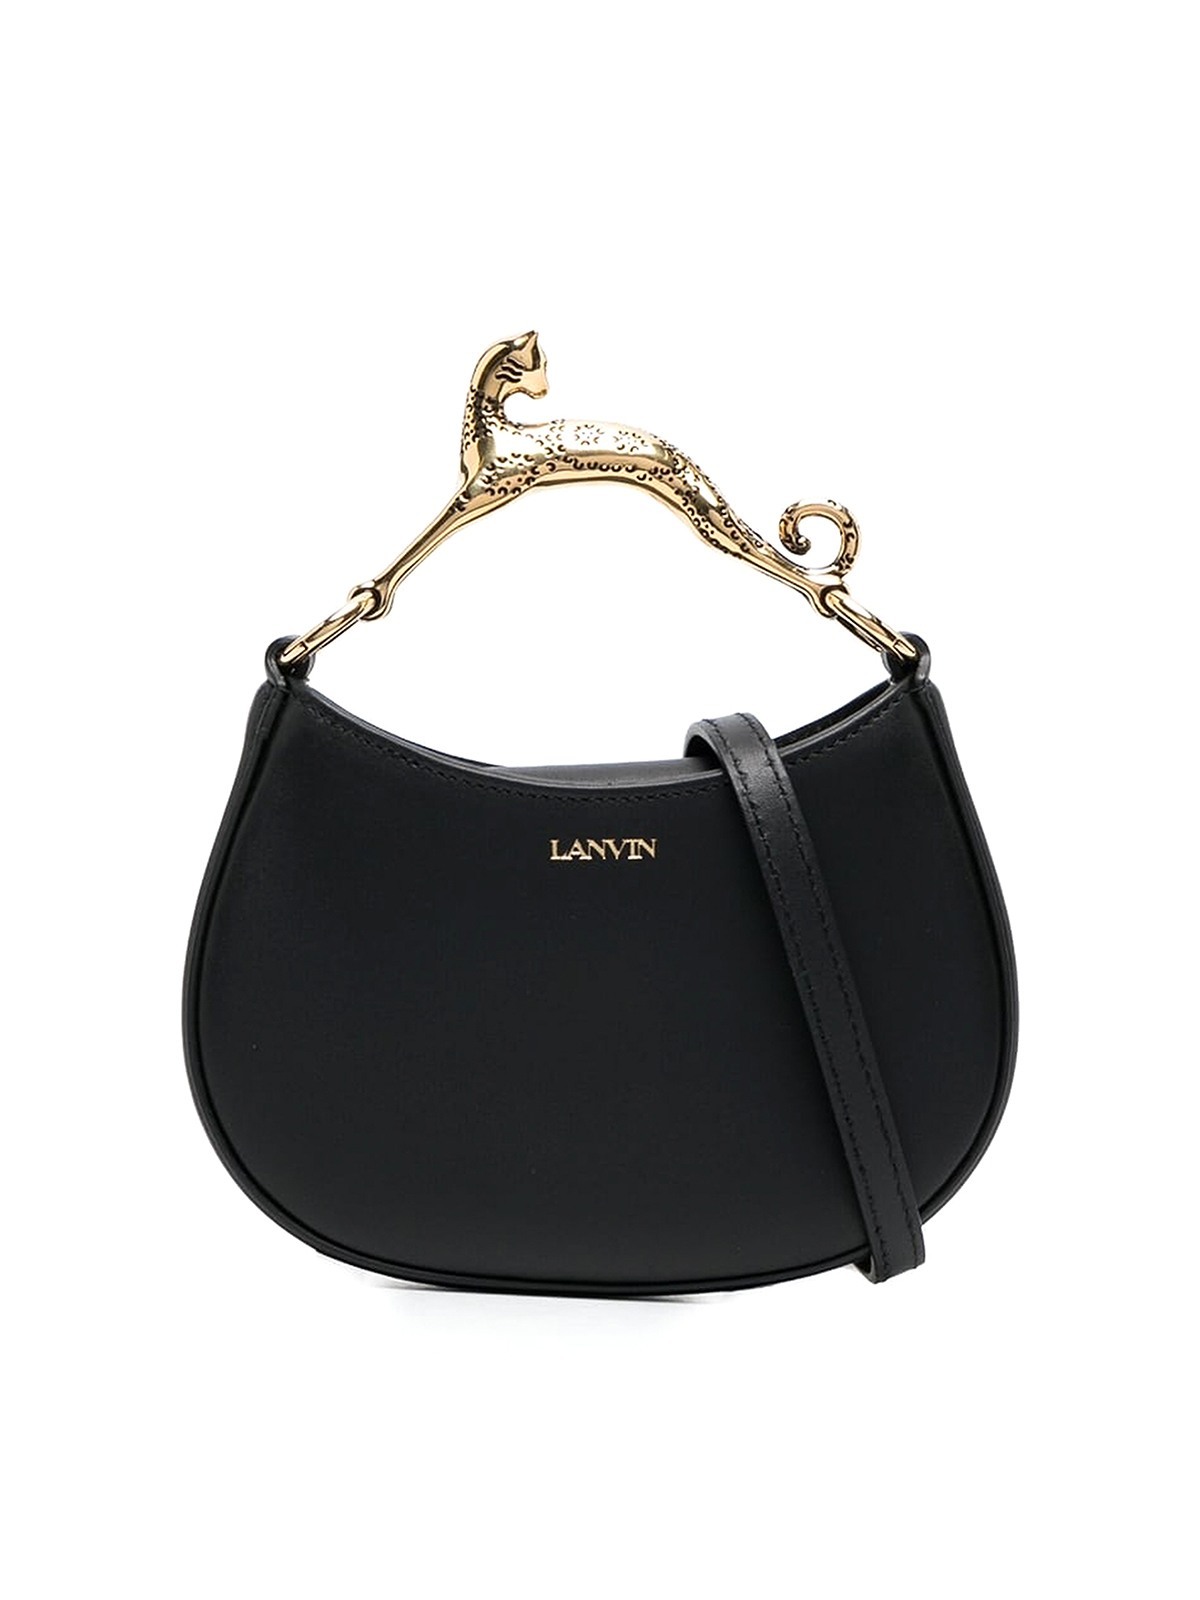 Lanvin Hobo Cat Leather Nano Handbag In Black